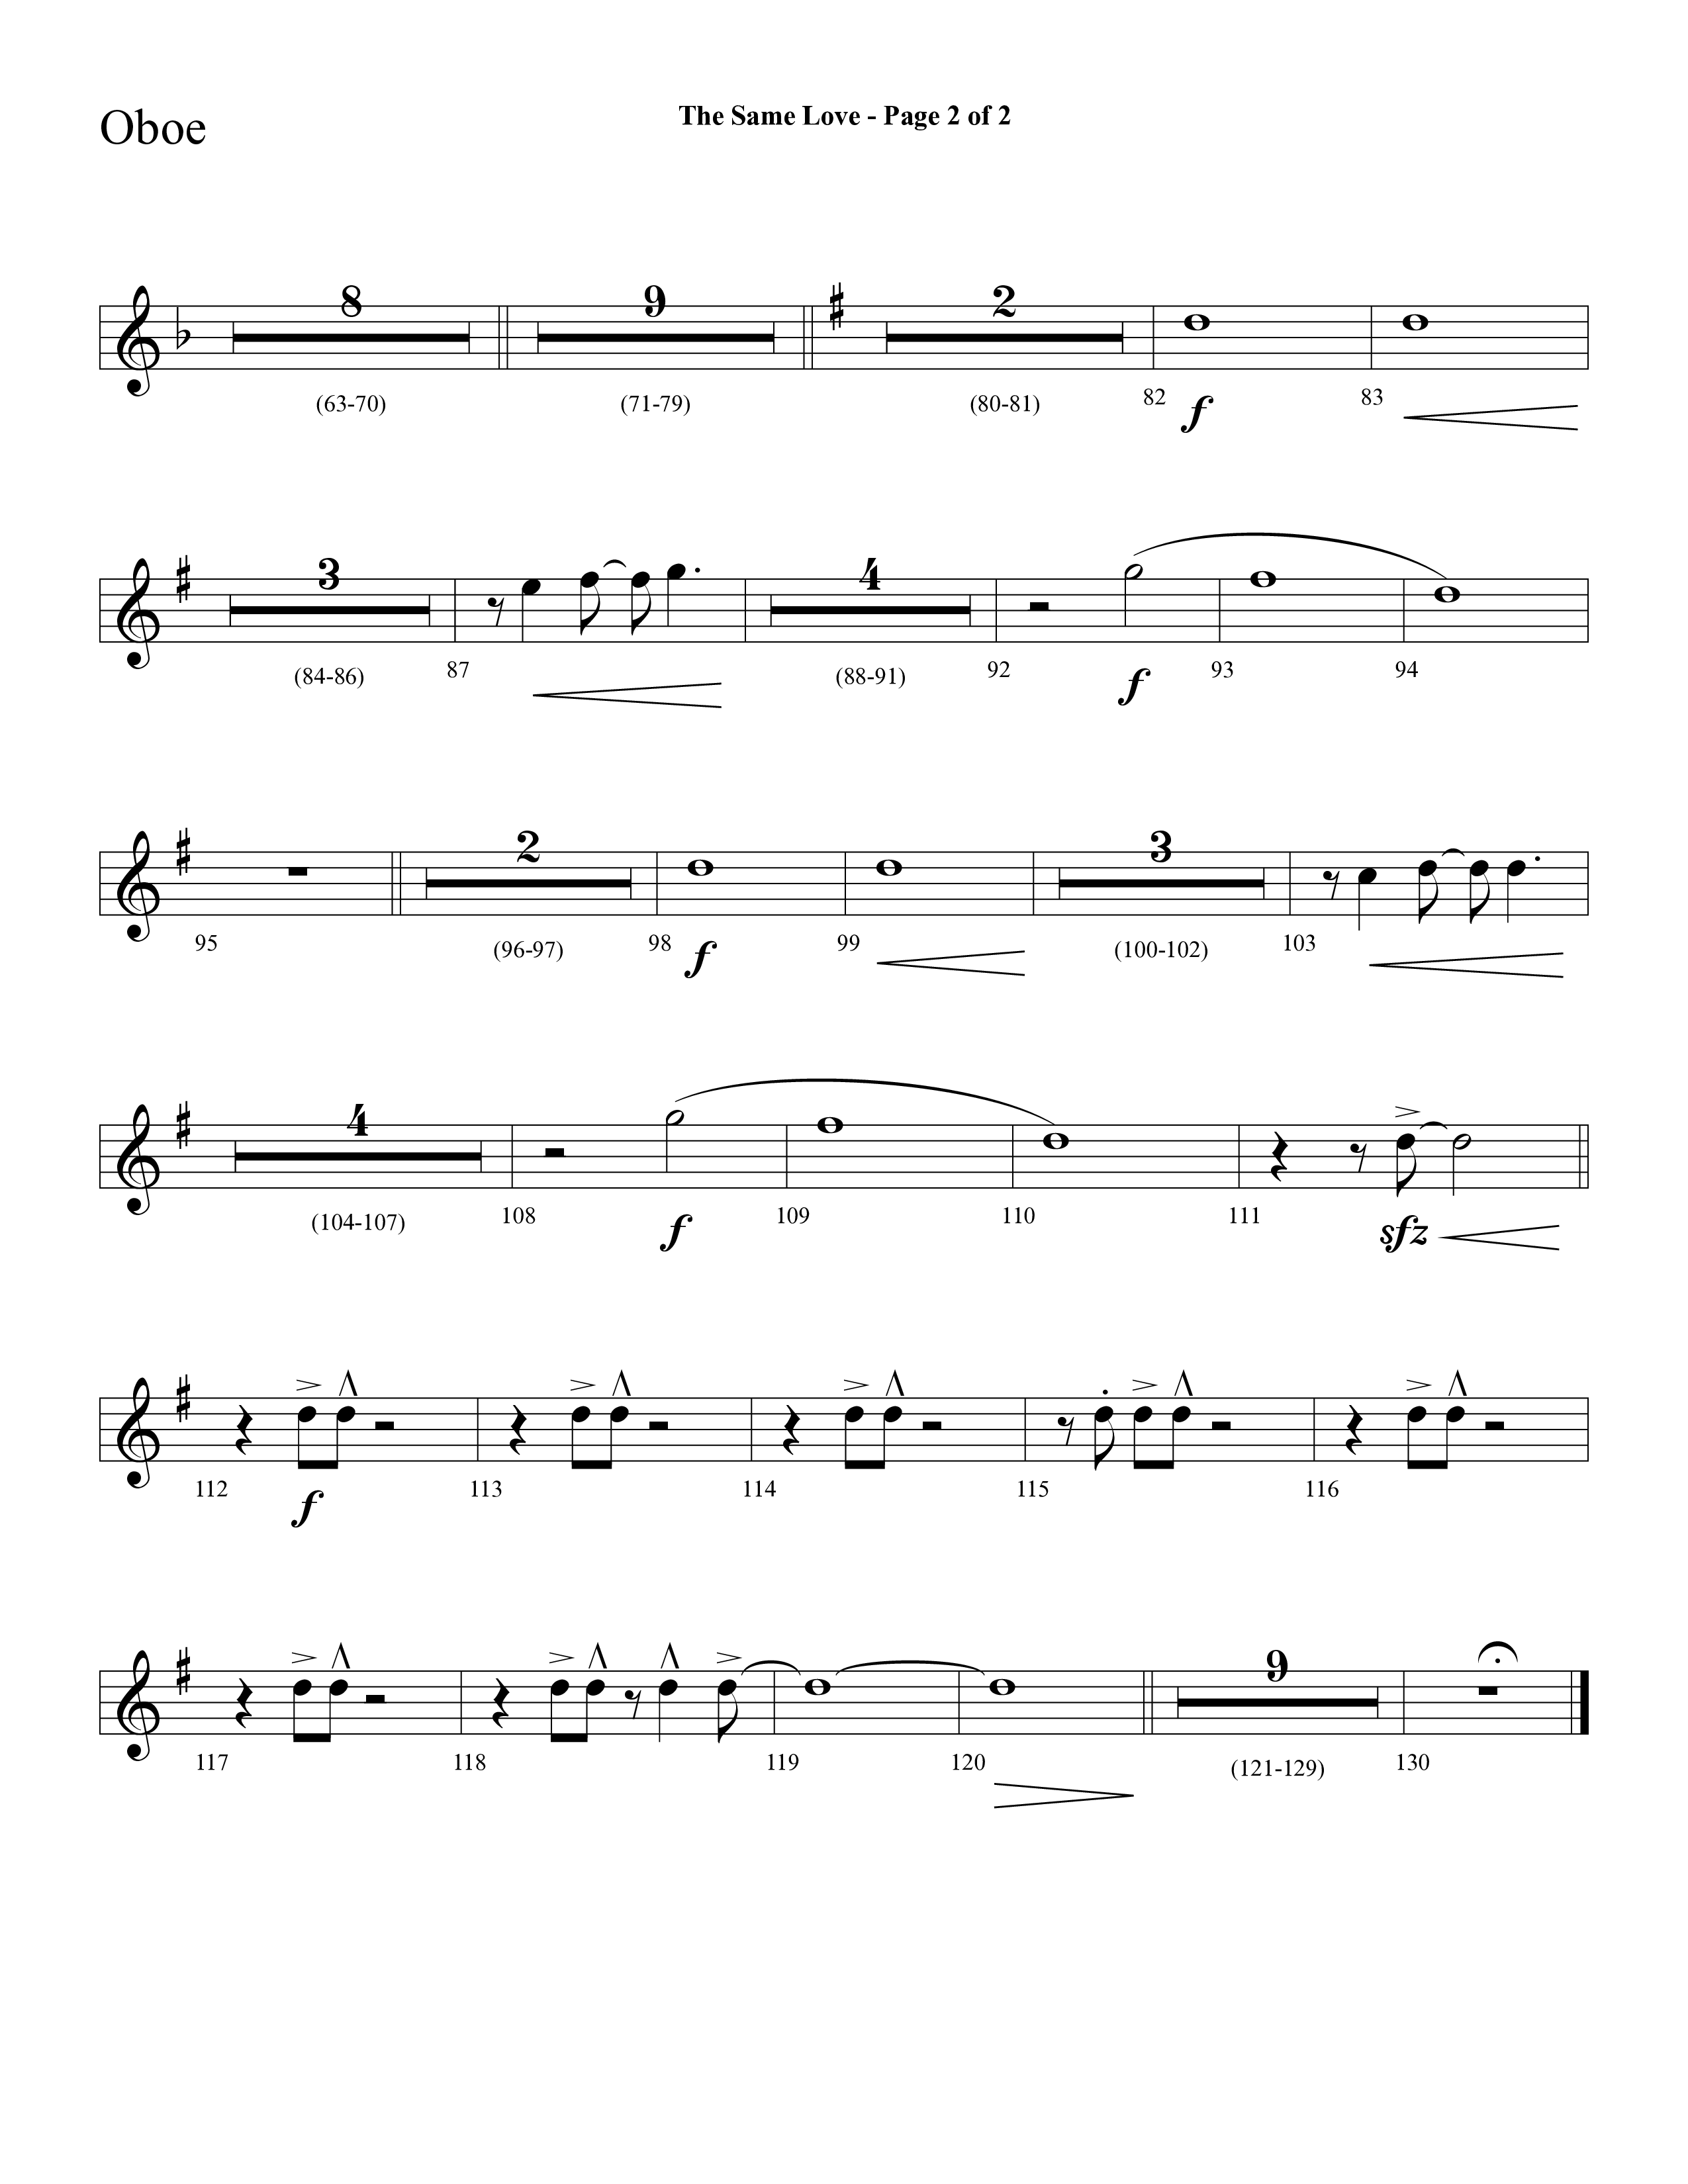 The Same Love (Choral Anthem SATB) Oboe (Lifeway Choral / Arr. Cliff Duren)